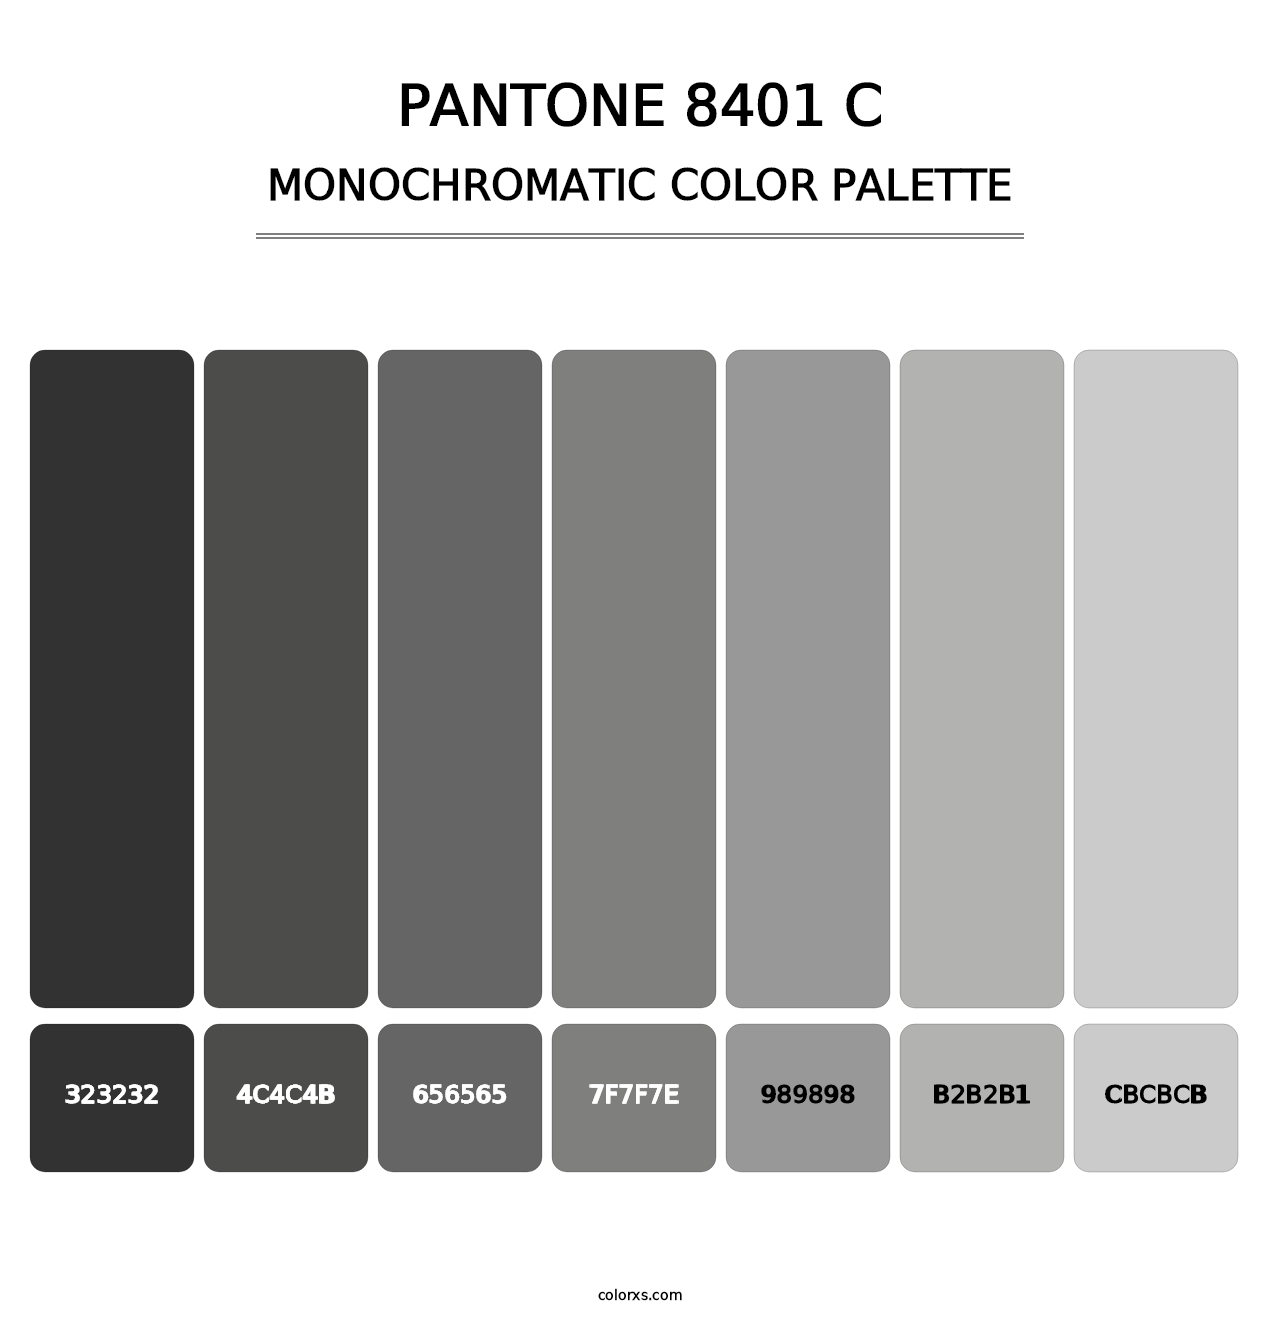 PANTONE 8401 C - Monochromatic Color Palette